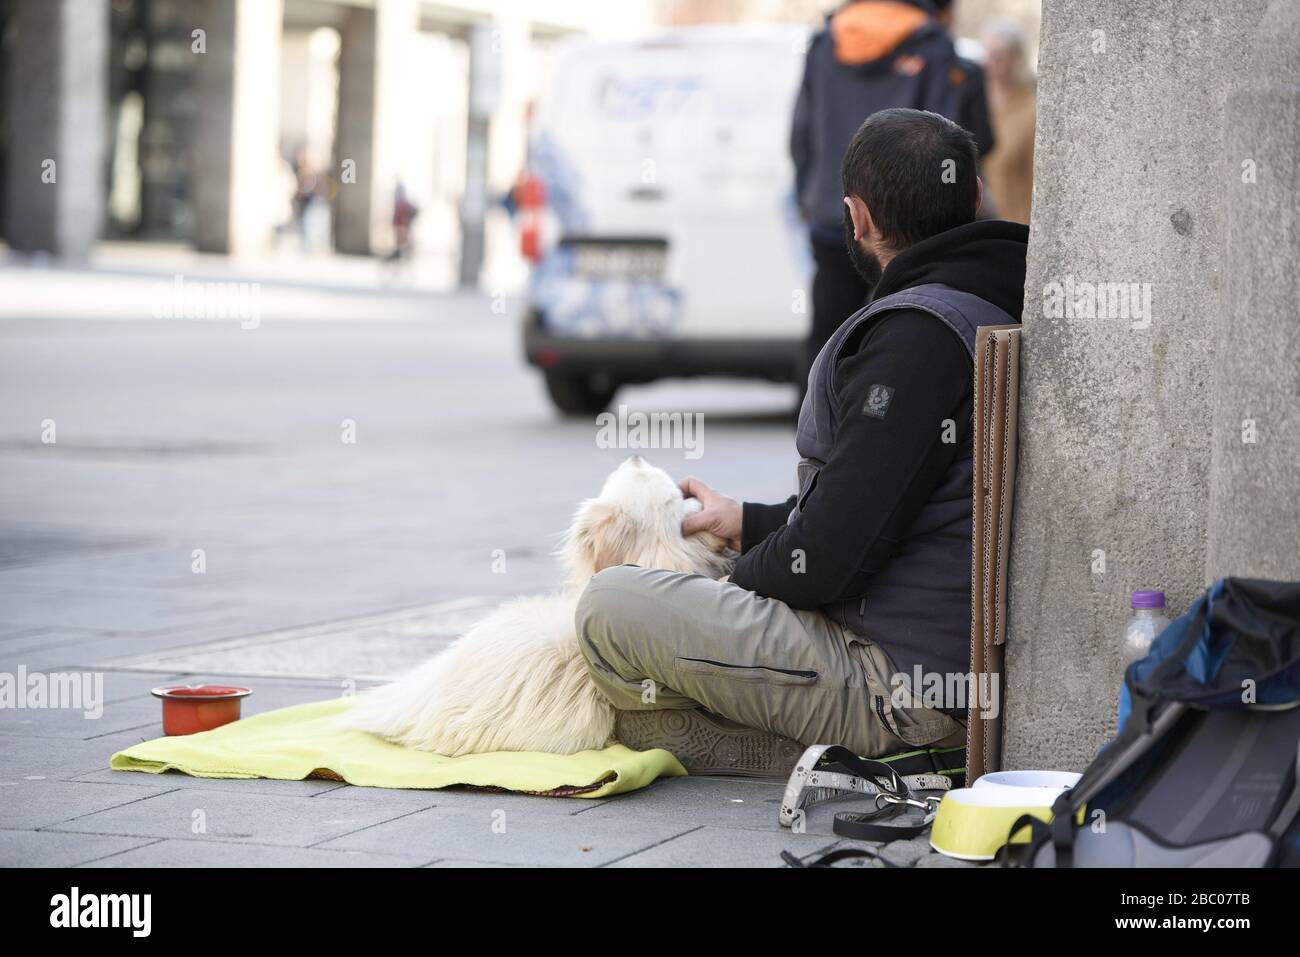 Corona-Krise in München: Während der Ausgangssperre der Menschen leiden Obdachlose und Bettler in München besonders, weil ihnen die täglichen Spenden der Passanten fehlen. [Automatisierte Übersetzung] Stockfoto